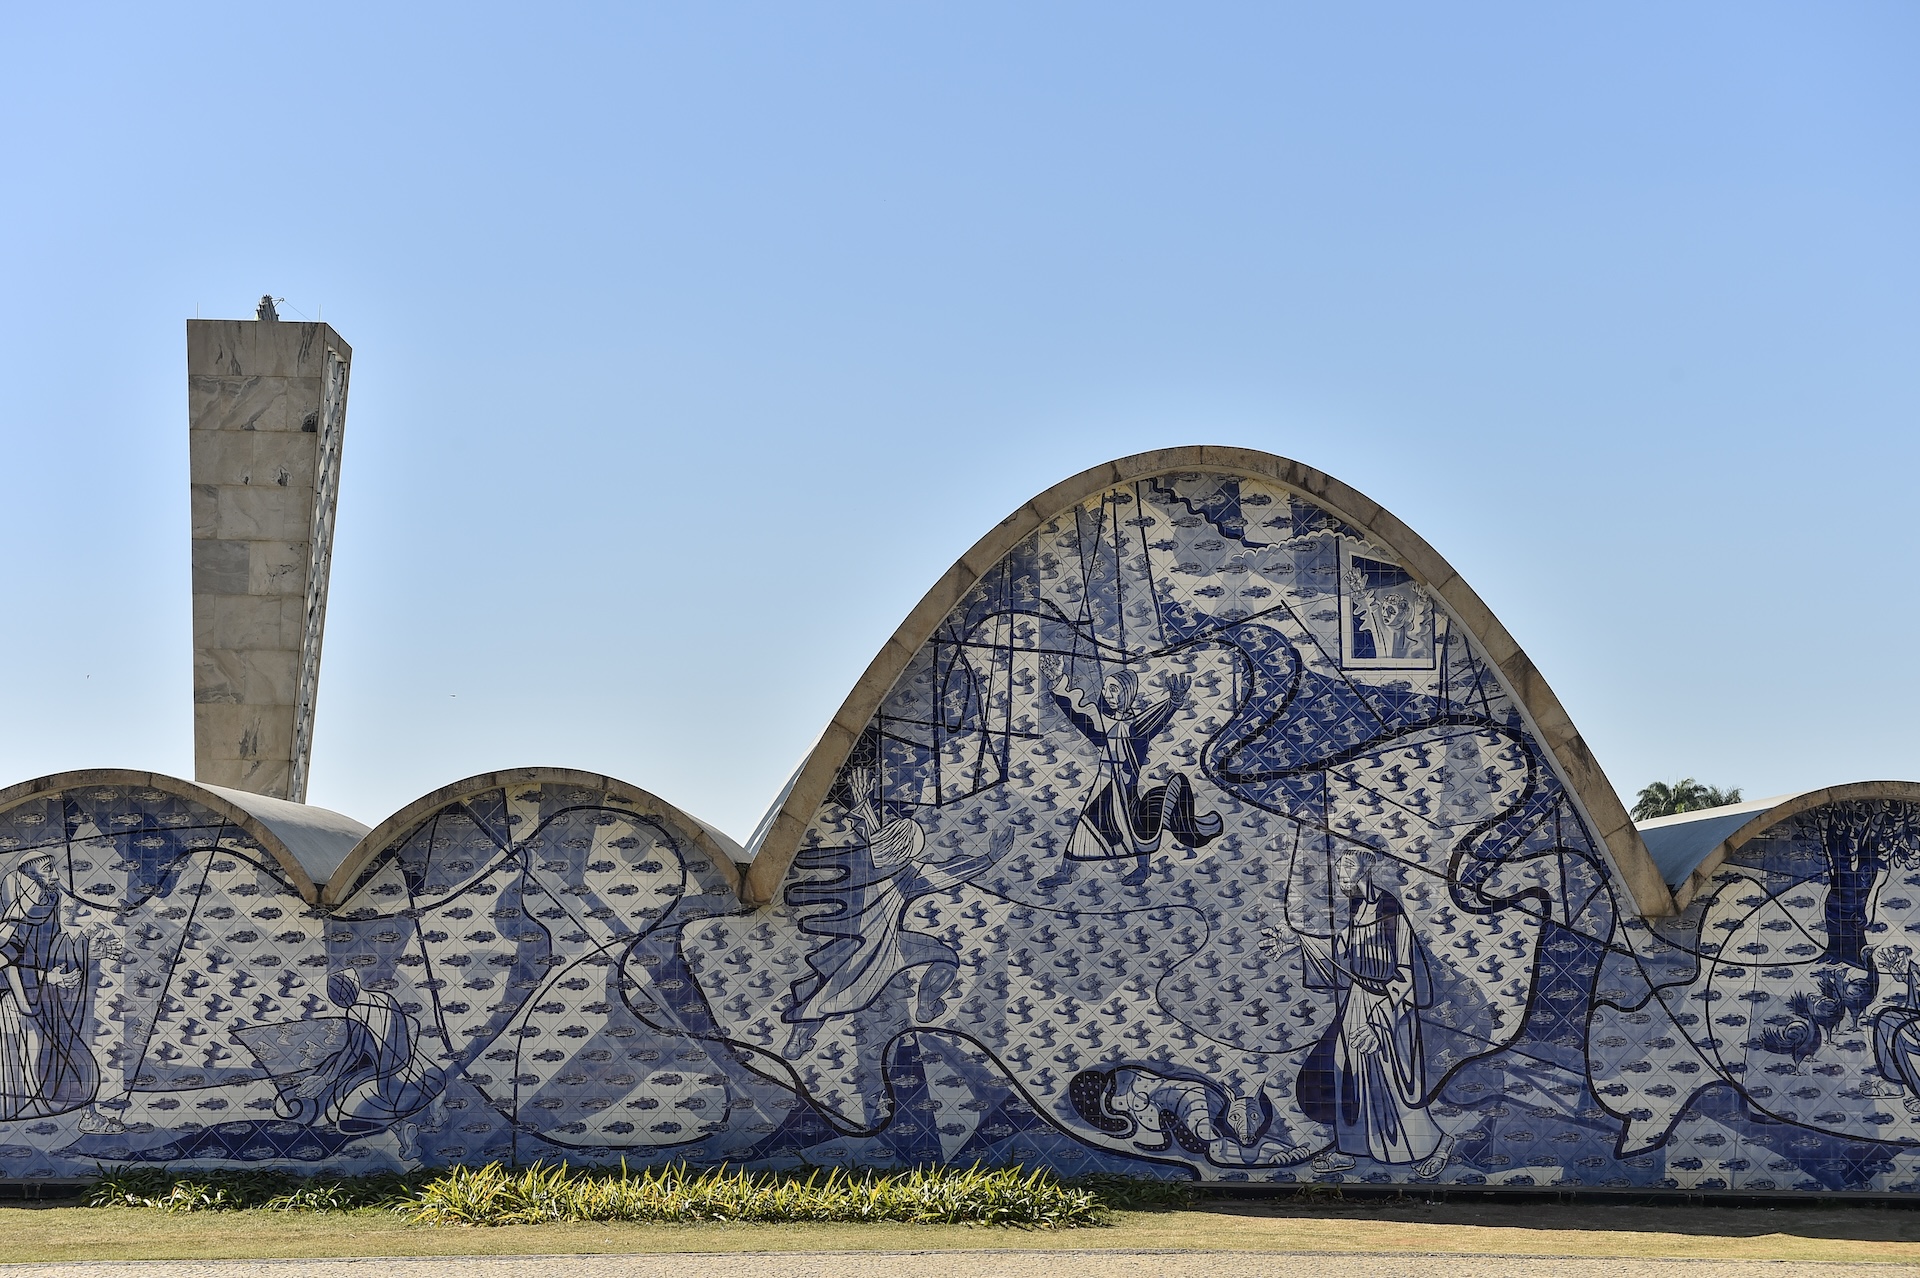 La Iglesia São Francisco de Assis da Pampulha, en Belo Horizonte, Minas Gerais, fue inaugurada en 1943. El diseño arquitectónico fue de Oscar Niemeyer y el cálculo estructural del ingeniero Joaquim Cardozo. (Foto: Pedro Vilela/MTur)